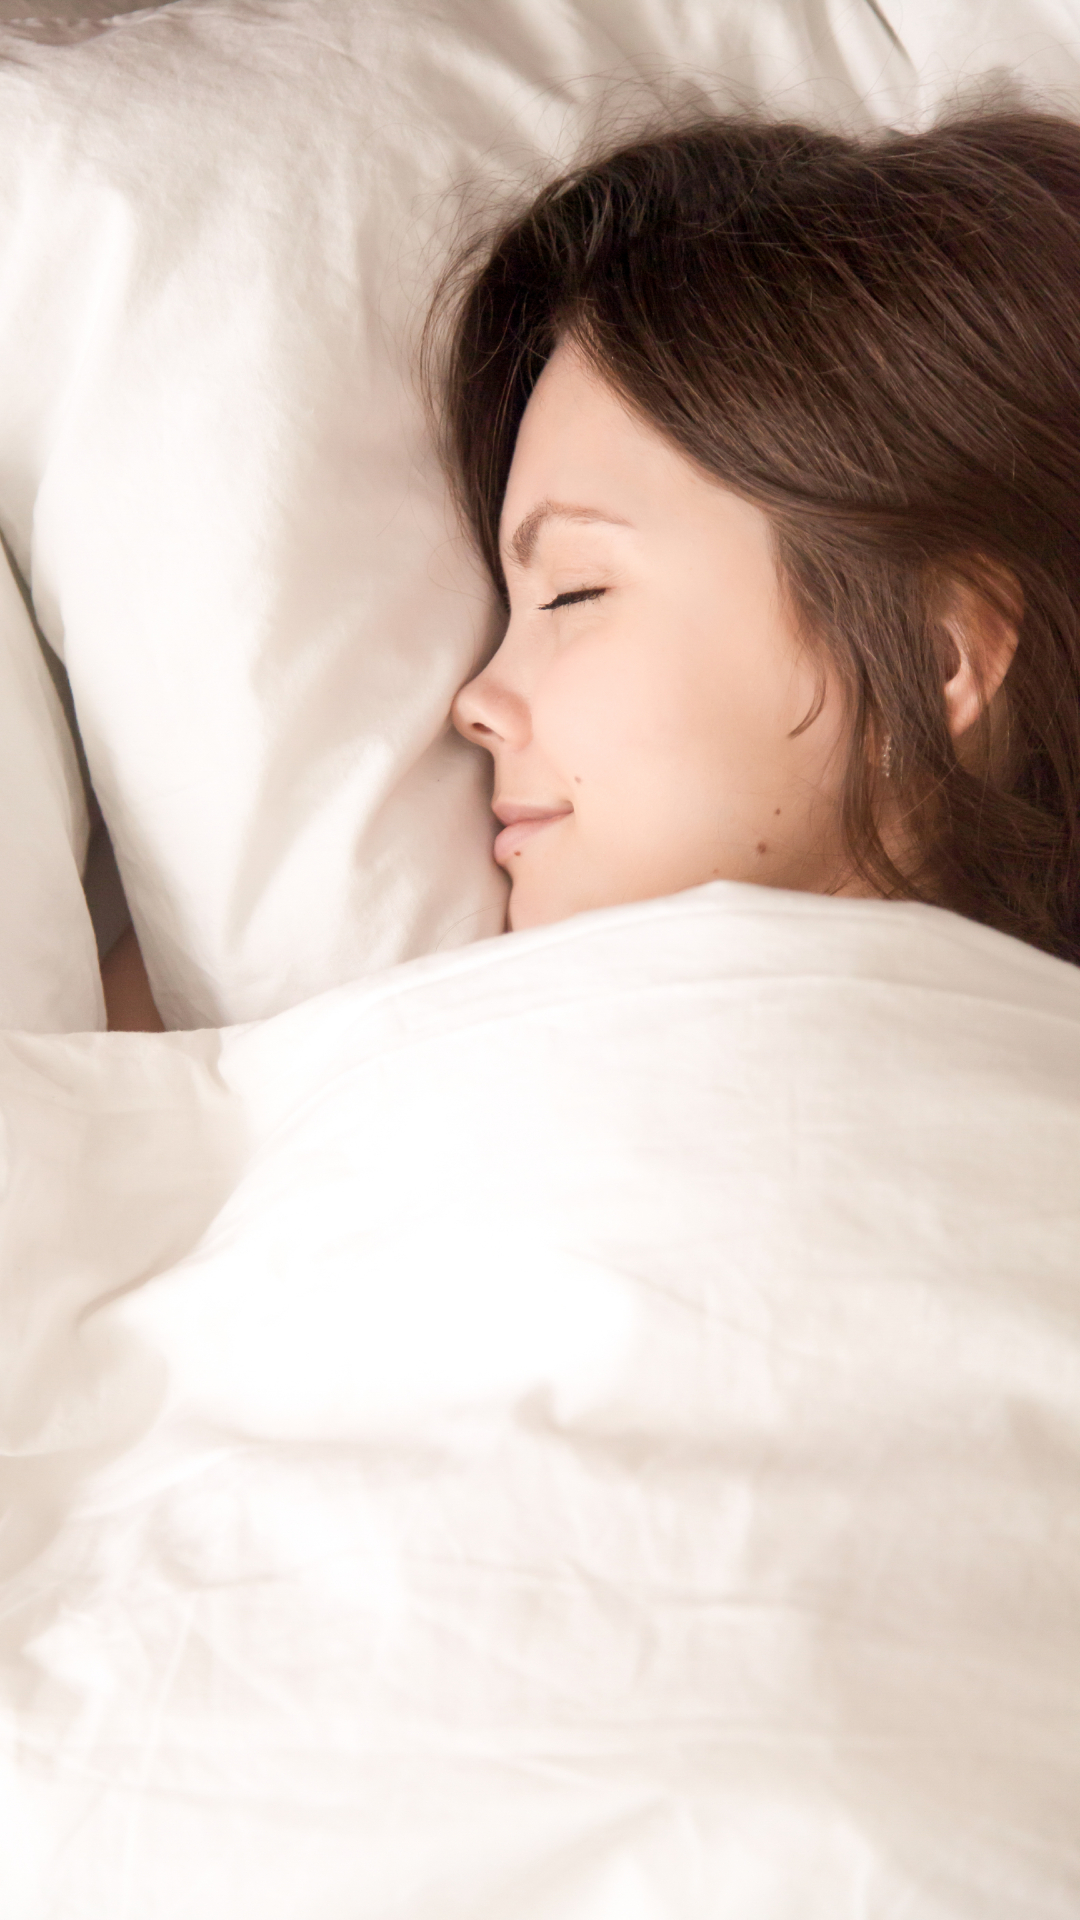 5 benefits of sleeping naked